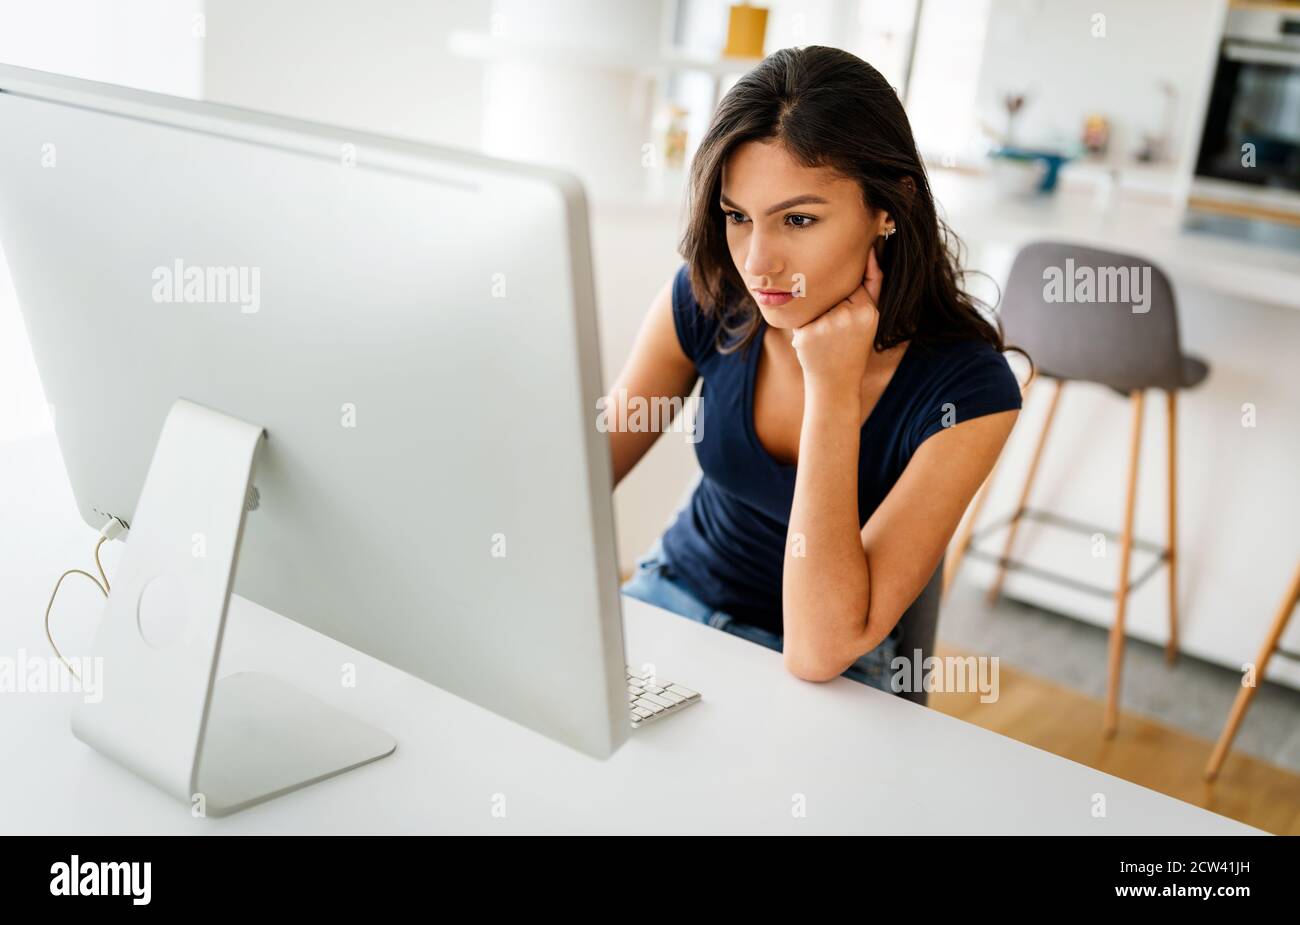 Belle jeune femme travaillant sur ordinateur. Technologie, personnes, travail, concept d'étude Banque D'Images